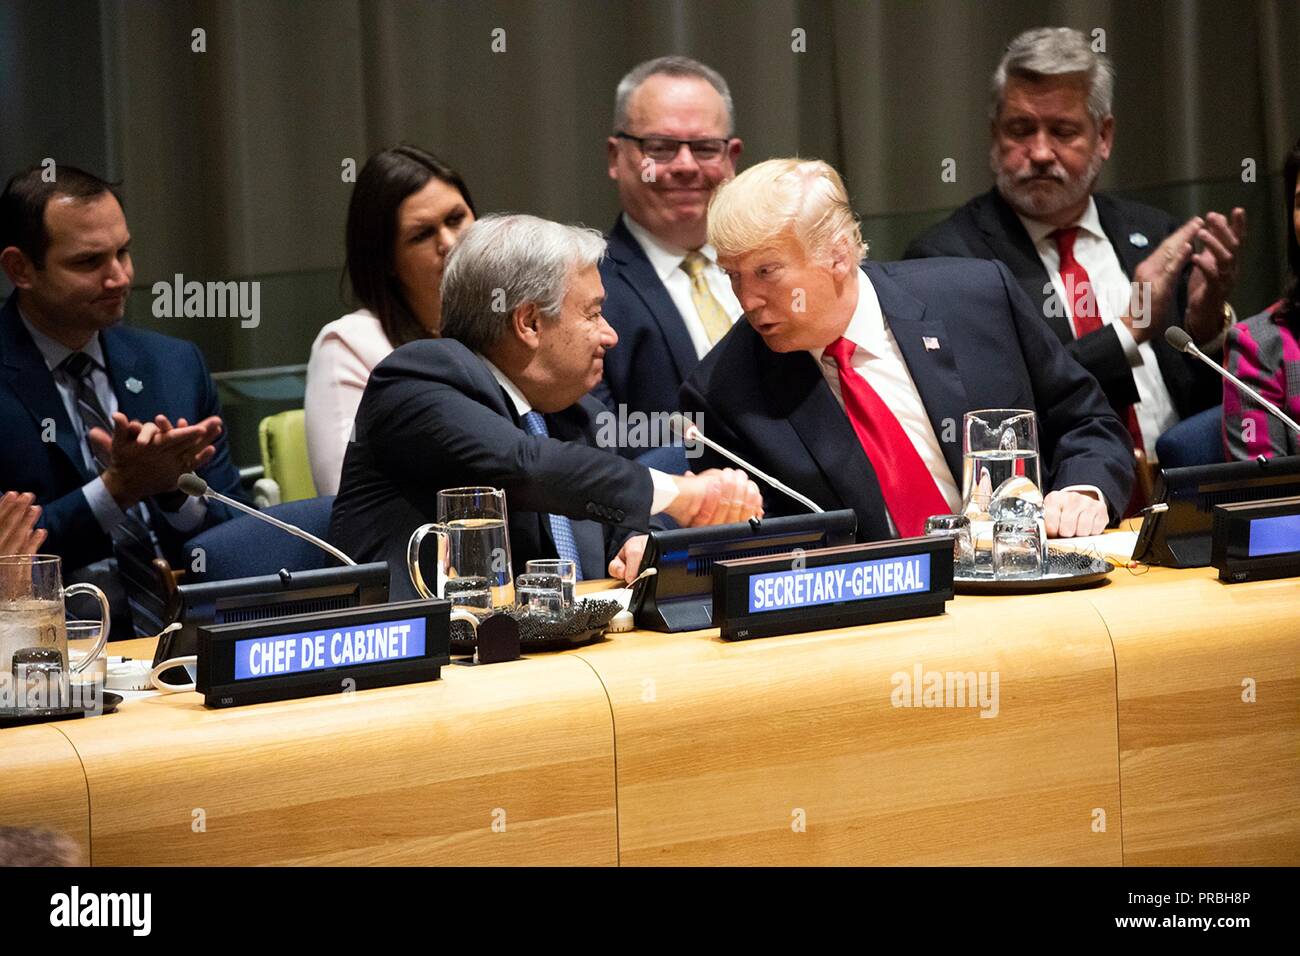 U.S presidente Donald Trump scambia strette di mano con U.N. Segretario generale Antonio Guterres prima di iniziare la chiamata globale di azione sul fenomeno della droga nel mondo incontro presso la sede delle Nazioni Unite di settembre 24, 2018 a New York, New York. Foto Stock